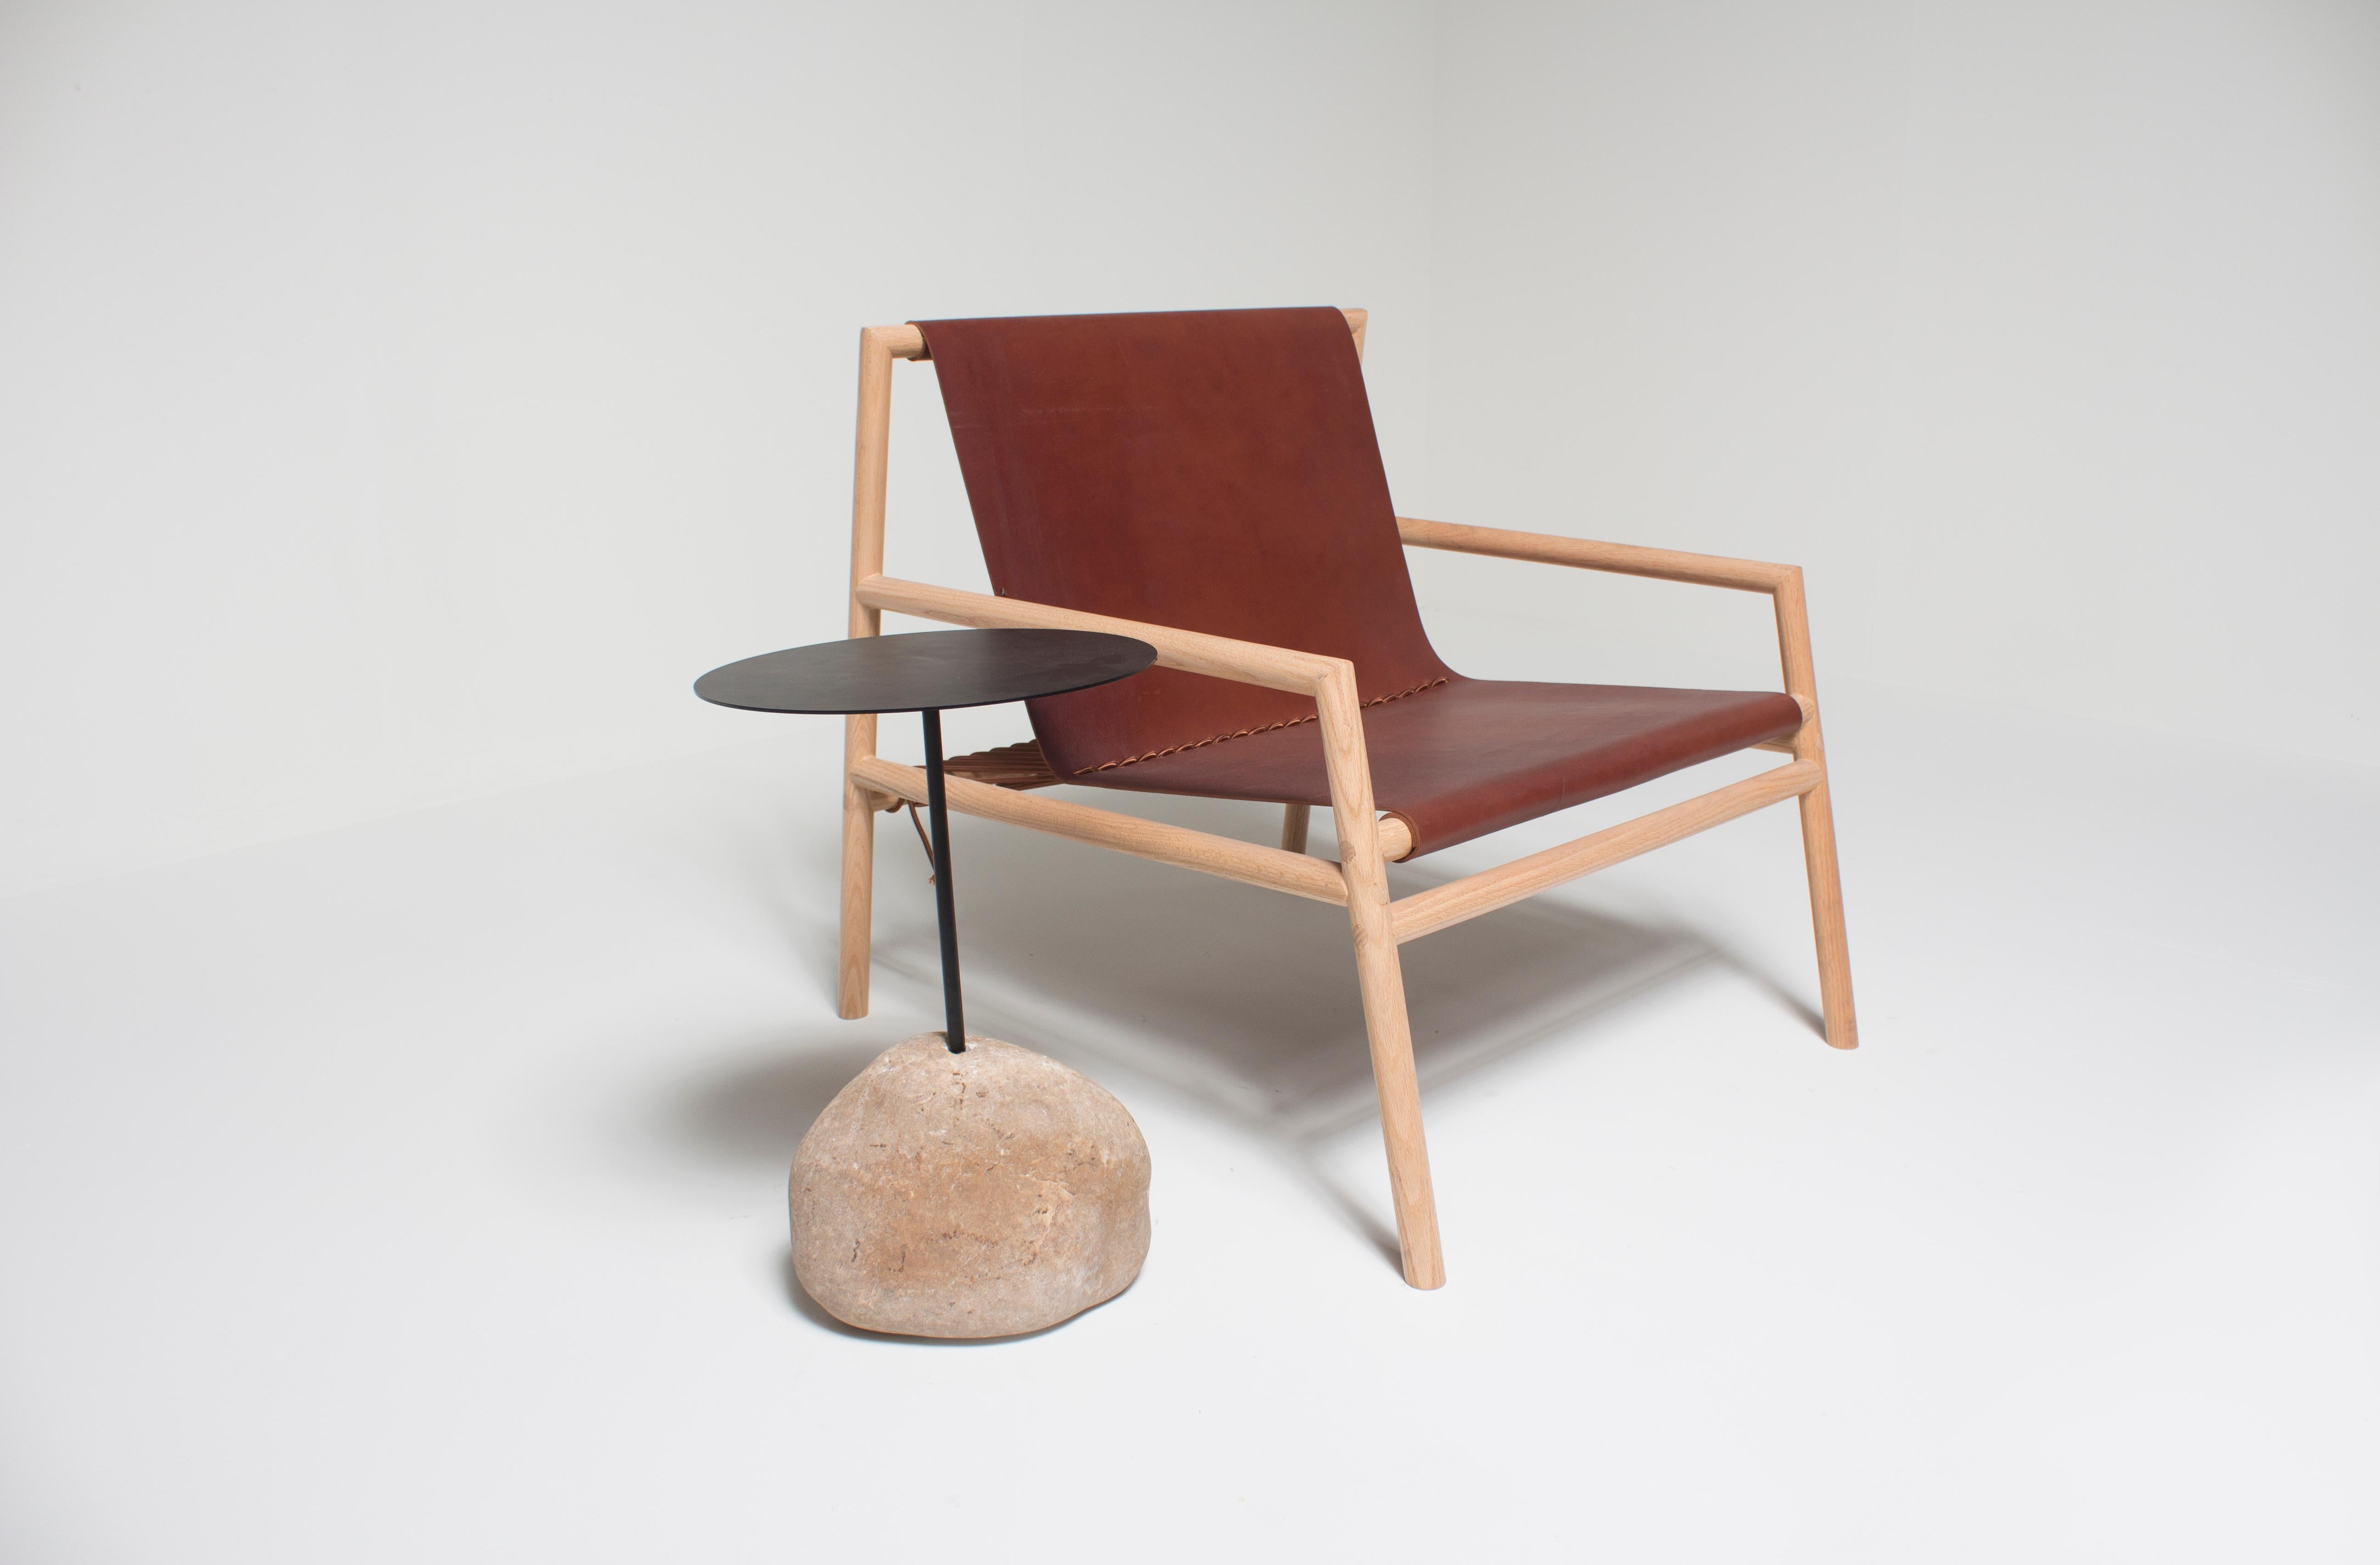 Chaise longue simple, minimale et propre. Fabriqué en bois de chêne massif et en cuir nord-américain véritable.
 